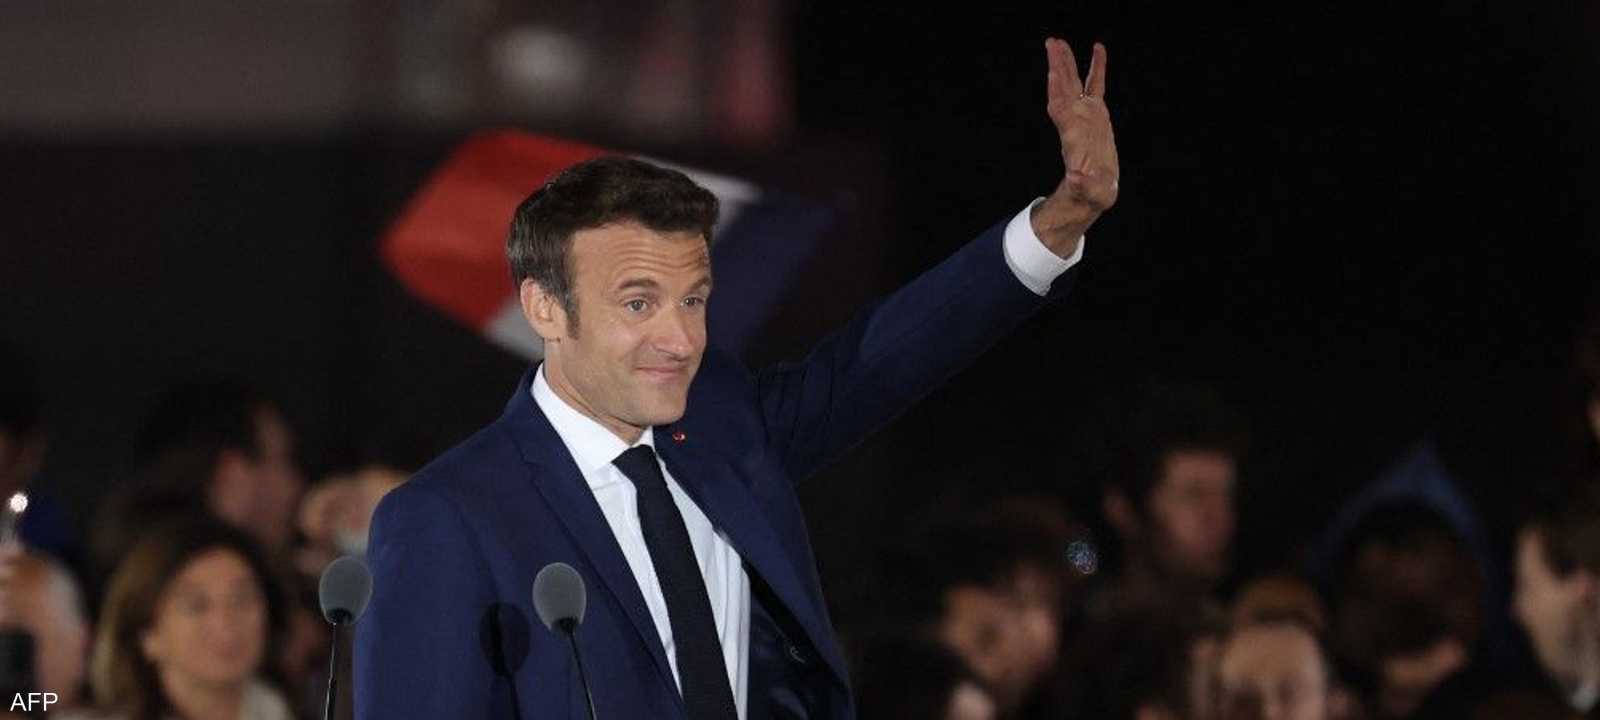 ماكرون أول رئيس فرنسي يحظى بولاية ثانية منذ 20 عاما